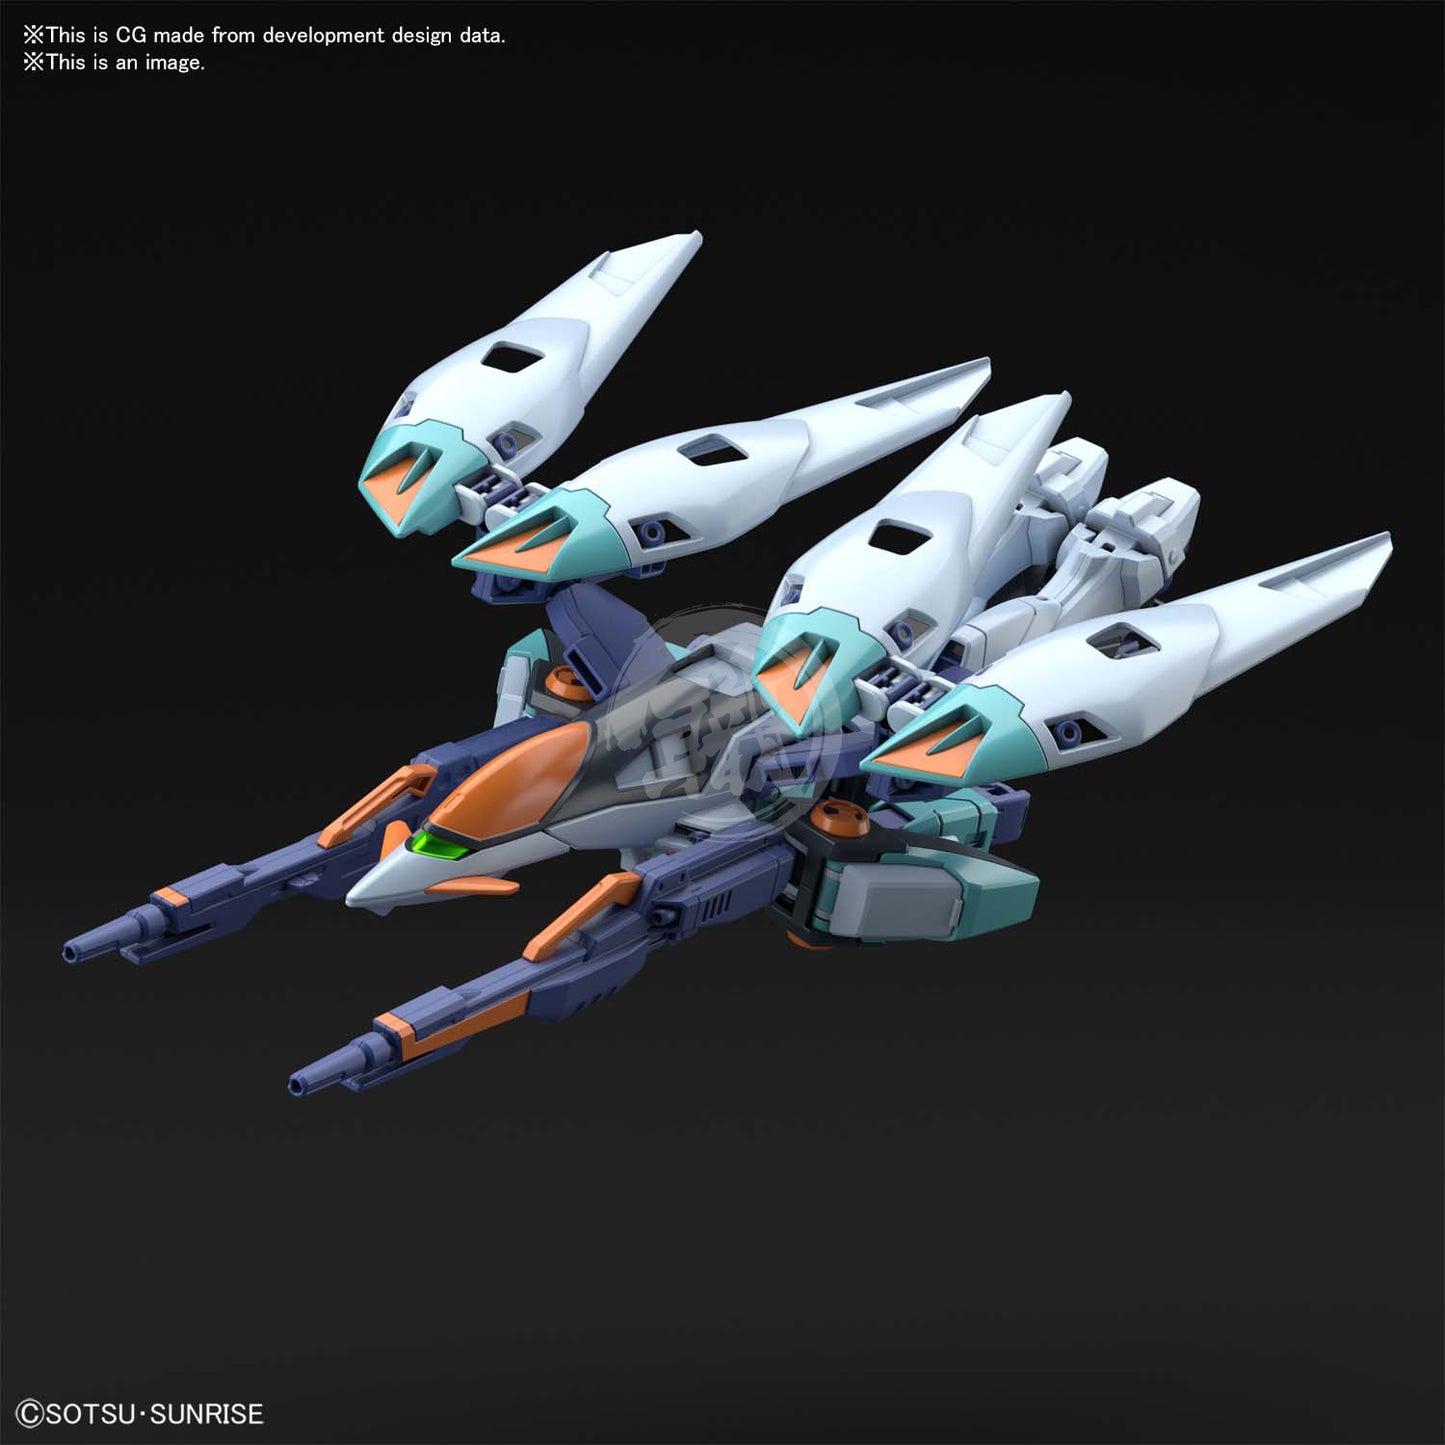 HG Wing Gundam Sky Zero - ShokuninGunpla